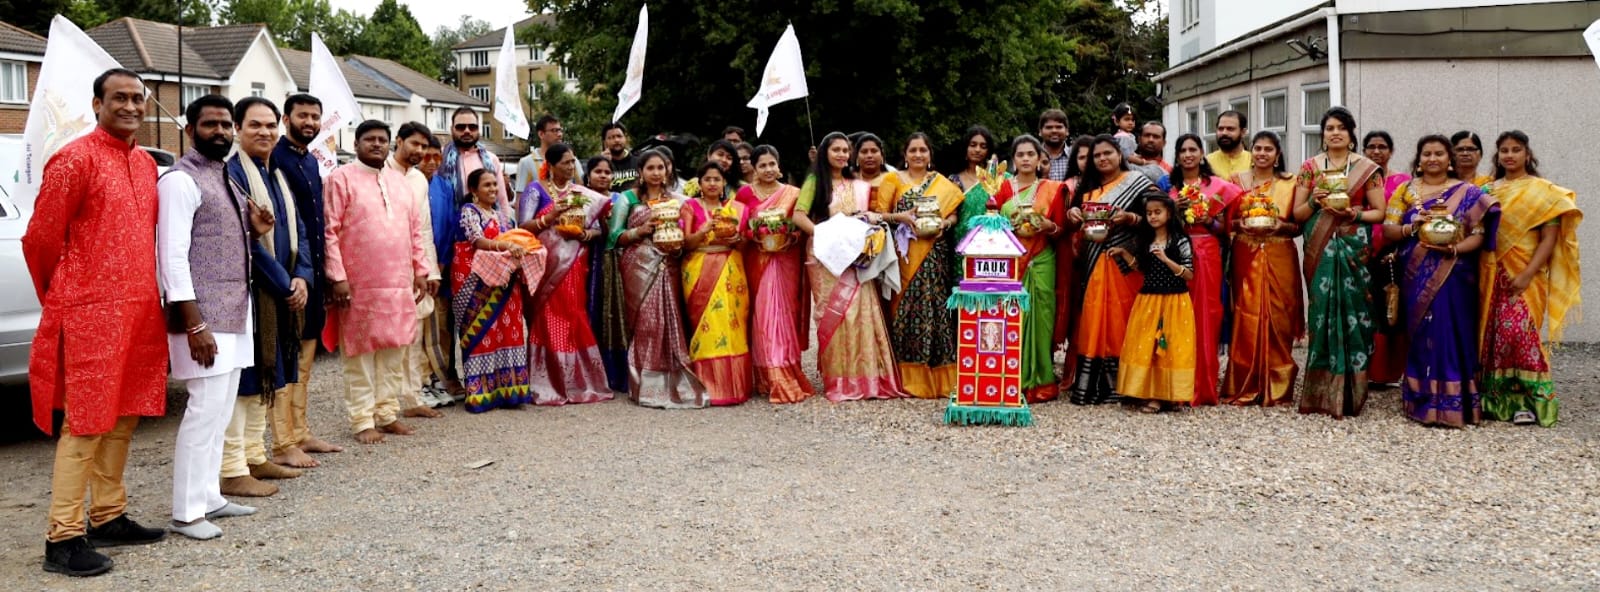 Telangana Association of United Kingdom celebrates Bonalu in London